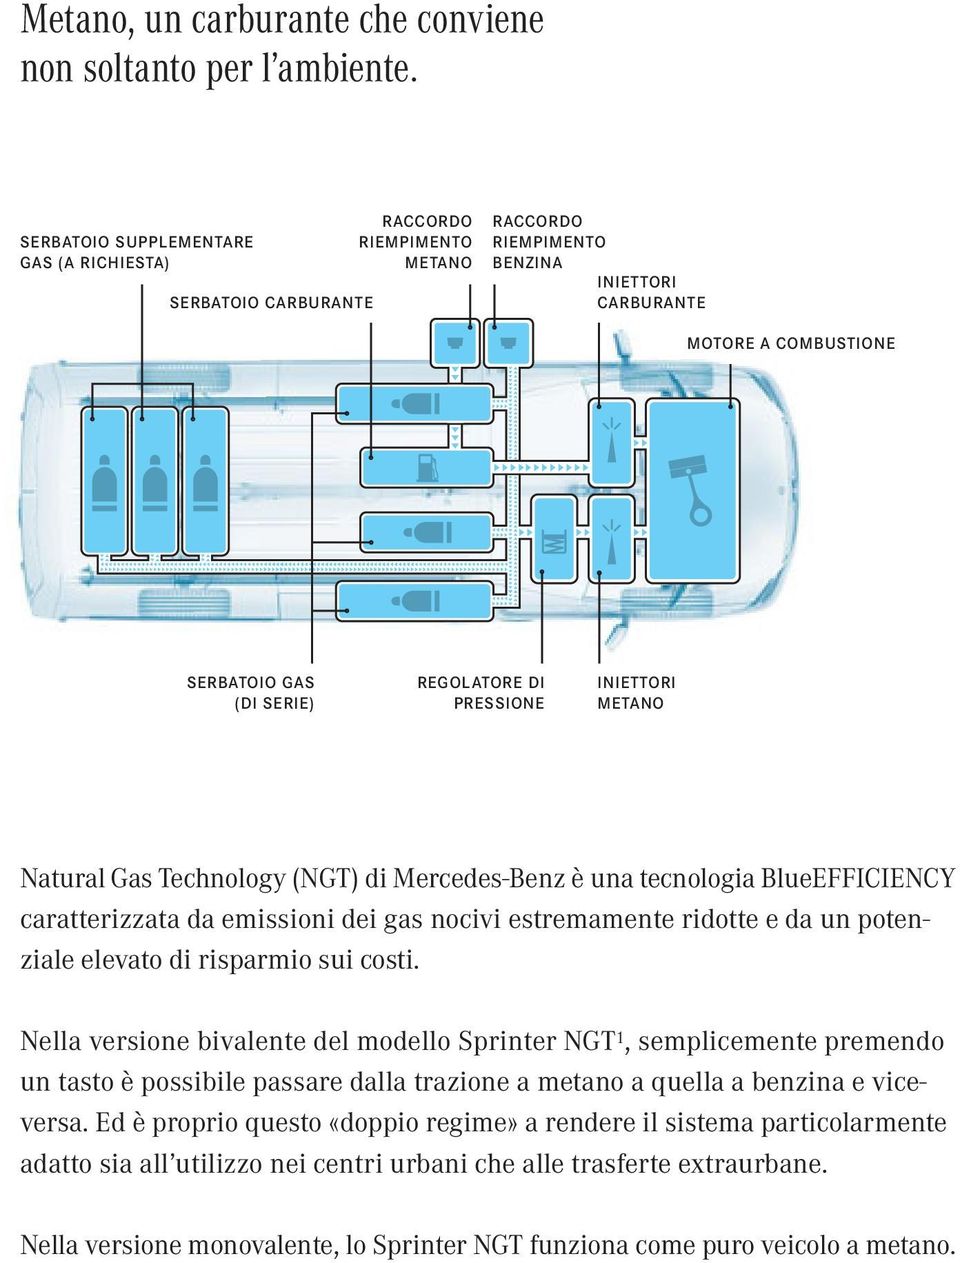 DI PRESSIONE INIETTORI METANO Natural Gas Technology (NGT) di Mercedes-Benz è una tecnologia BlueEFFICIENCY caratterizzata da emissioni dei gas nocivi estremamente ridotte e da un potenziale elevato